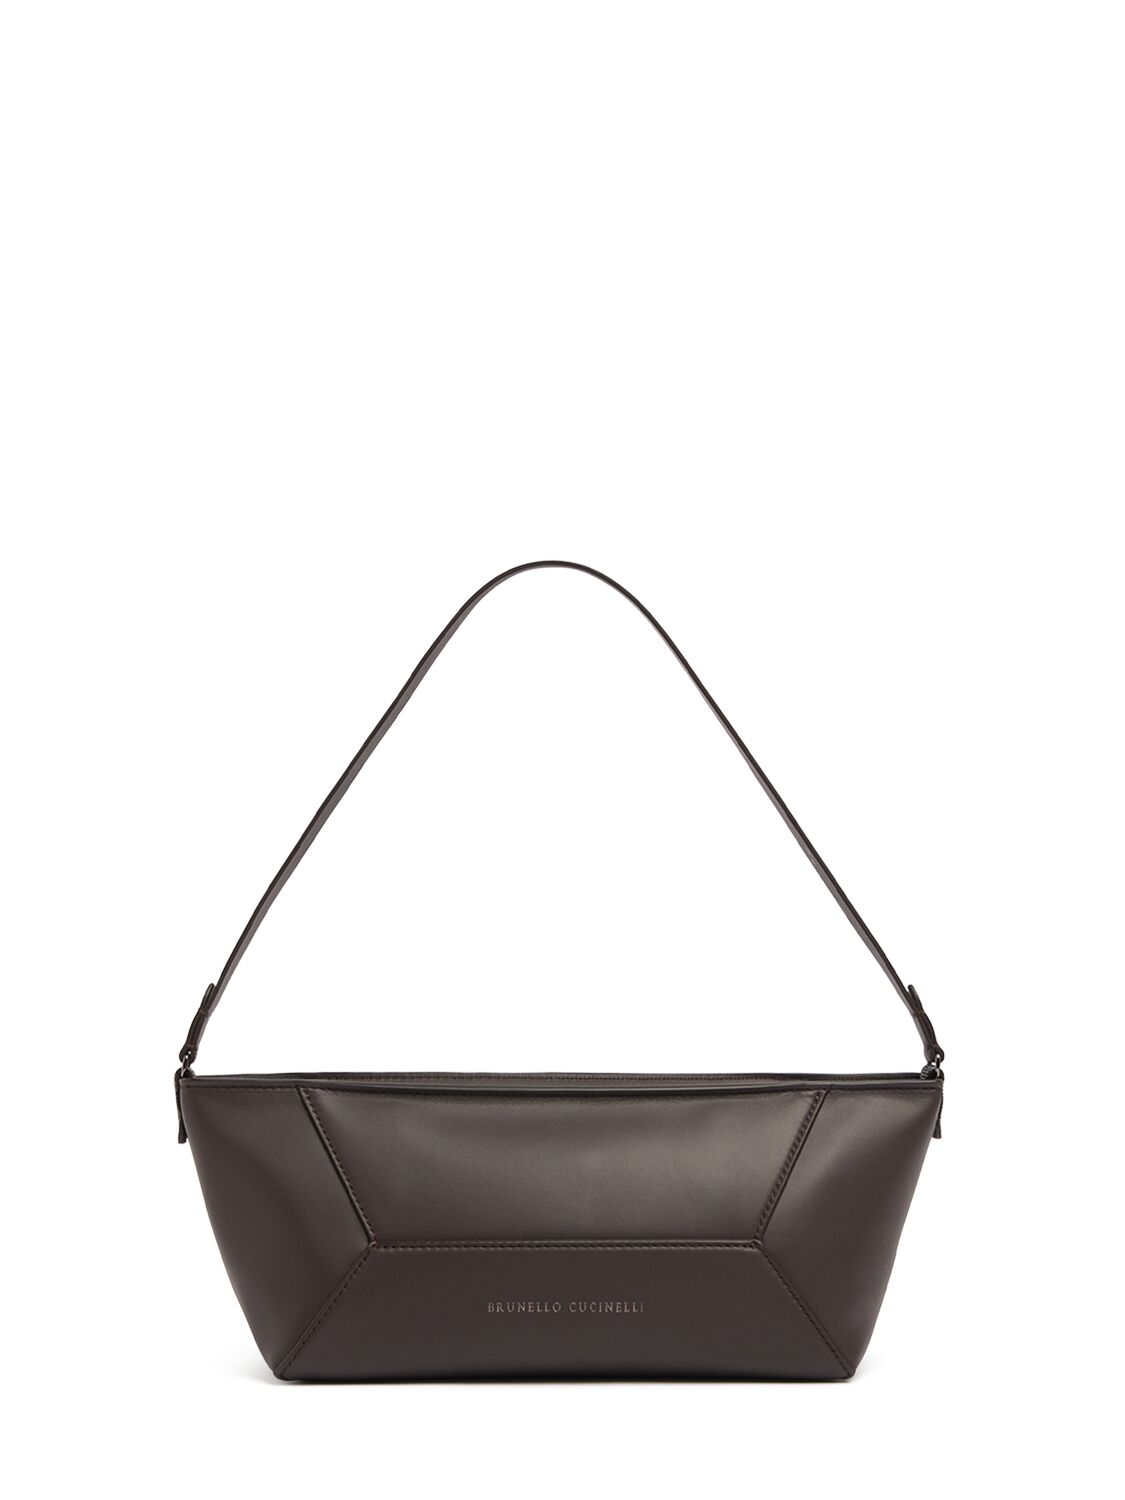 Brunello Cucinelli Softy Leather Shoulder Bag In Dark Brown